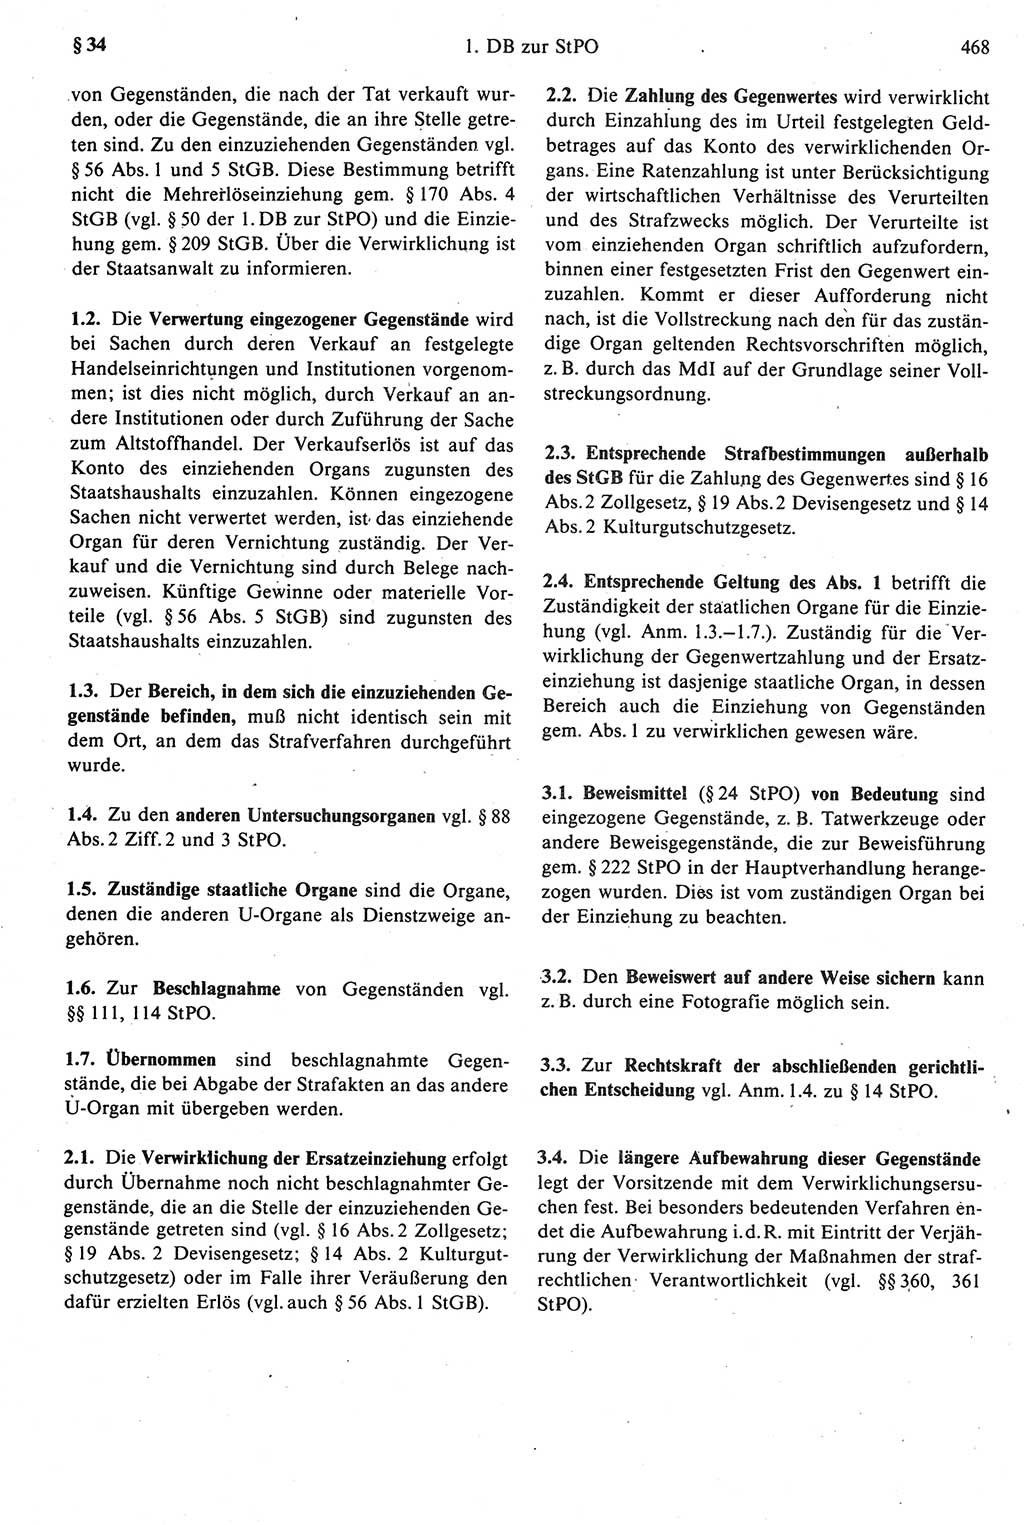 Strafprozeßrecht der DDR [Deutsche Demokratische Republik], Kommentar zur Strafprozeßordnung (StPO) 1987, Seite 468 (Strafprozeßr. DDR Komm. StPO 1987, S. 468)